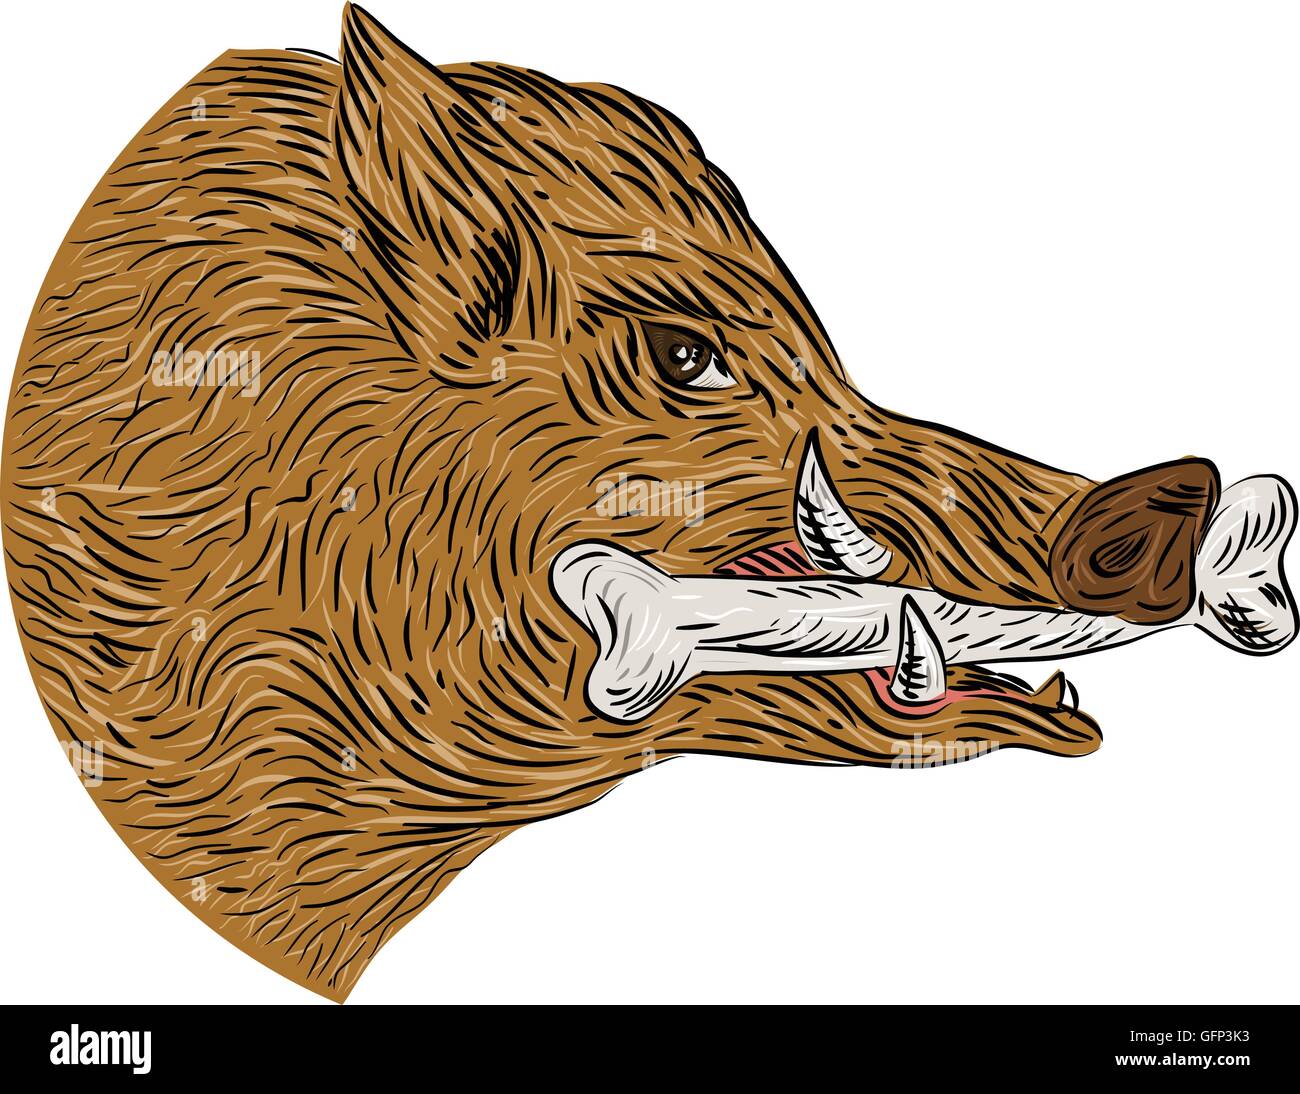 Disegno stile sketch illustrazione di un maiale selvatico cinghiale razorback testa con osso in bocca visto dal lato impostato su isolato sullo sfondo bianco. Illustrazione Vettoriale